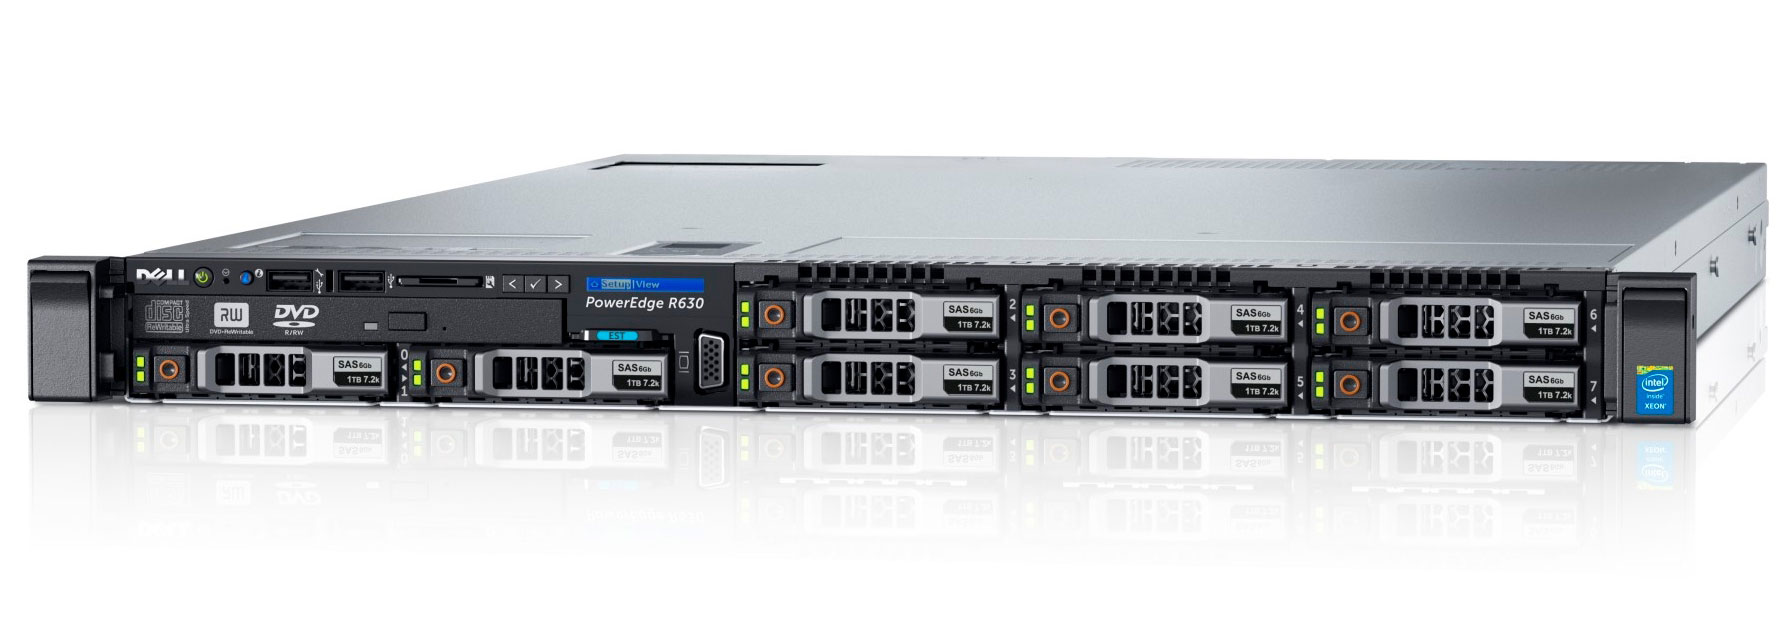 Подробное фото Сервер DELL PowerEdge R630 2x Xeon E5-2660v3 128Gb 2133P DDR4 8x noHDD 2.5" SAS RAID Perc H730, 1024Mb, 2*PSU